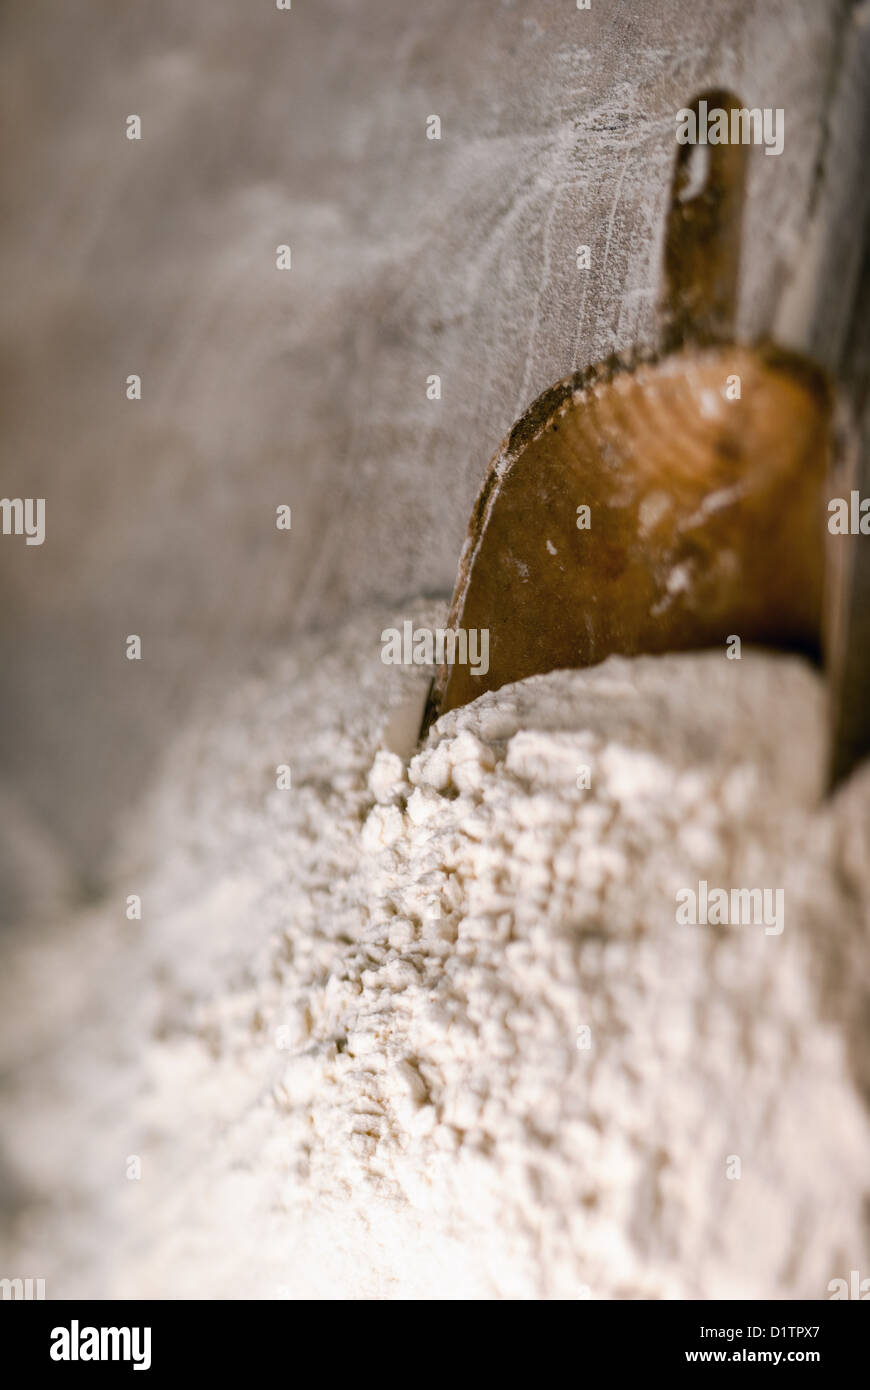 Tilt and shift defocus flour heap in a bakery Stock Photo